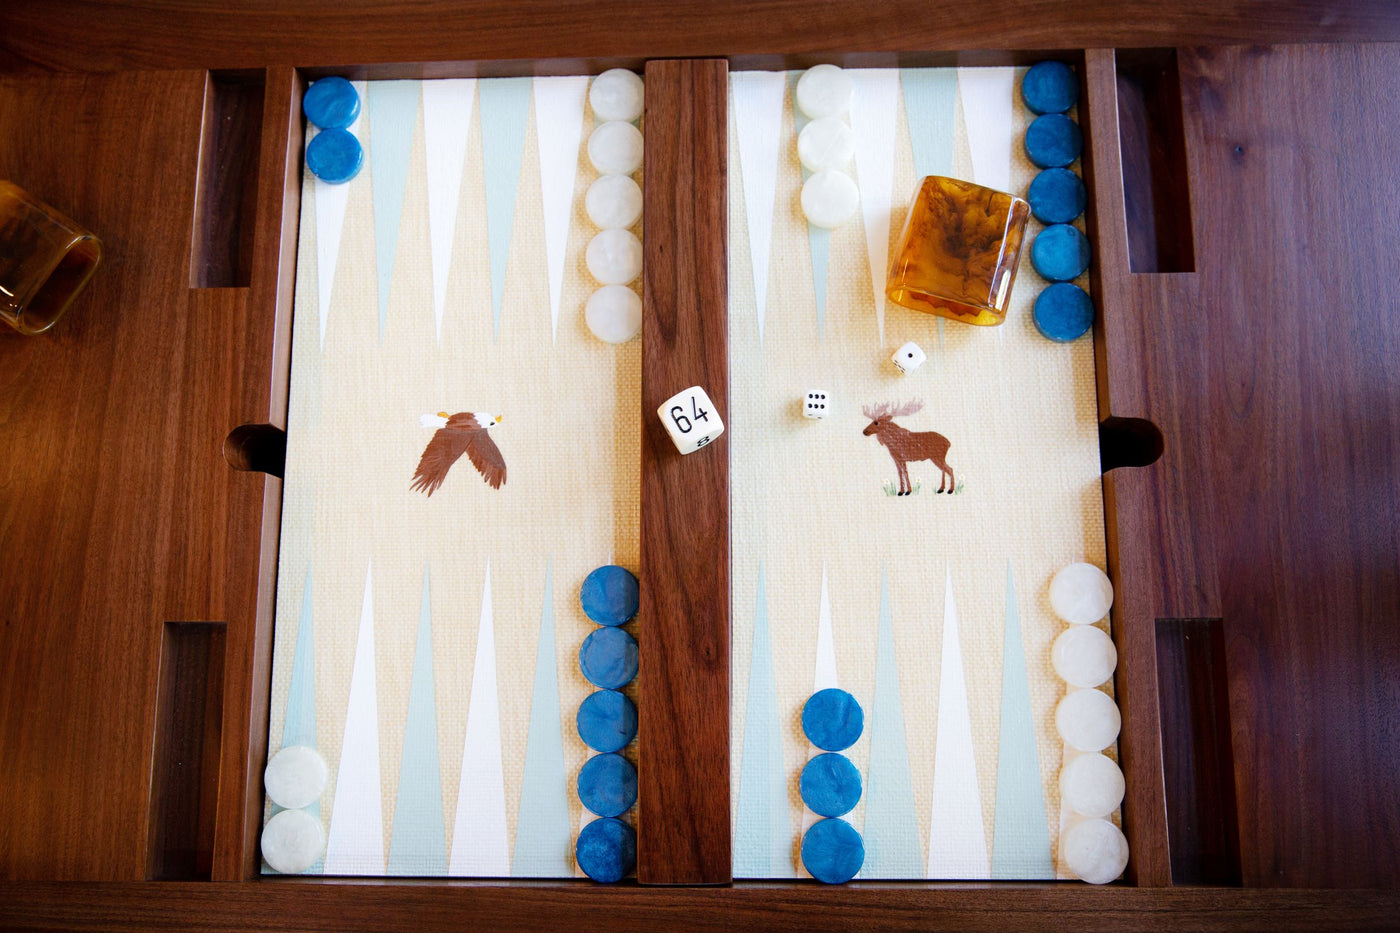 Nine Fair Backgammon Game Table